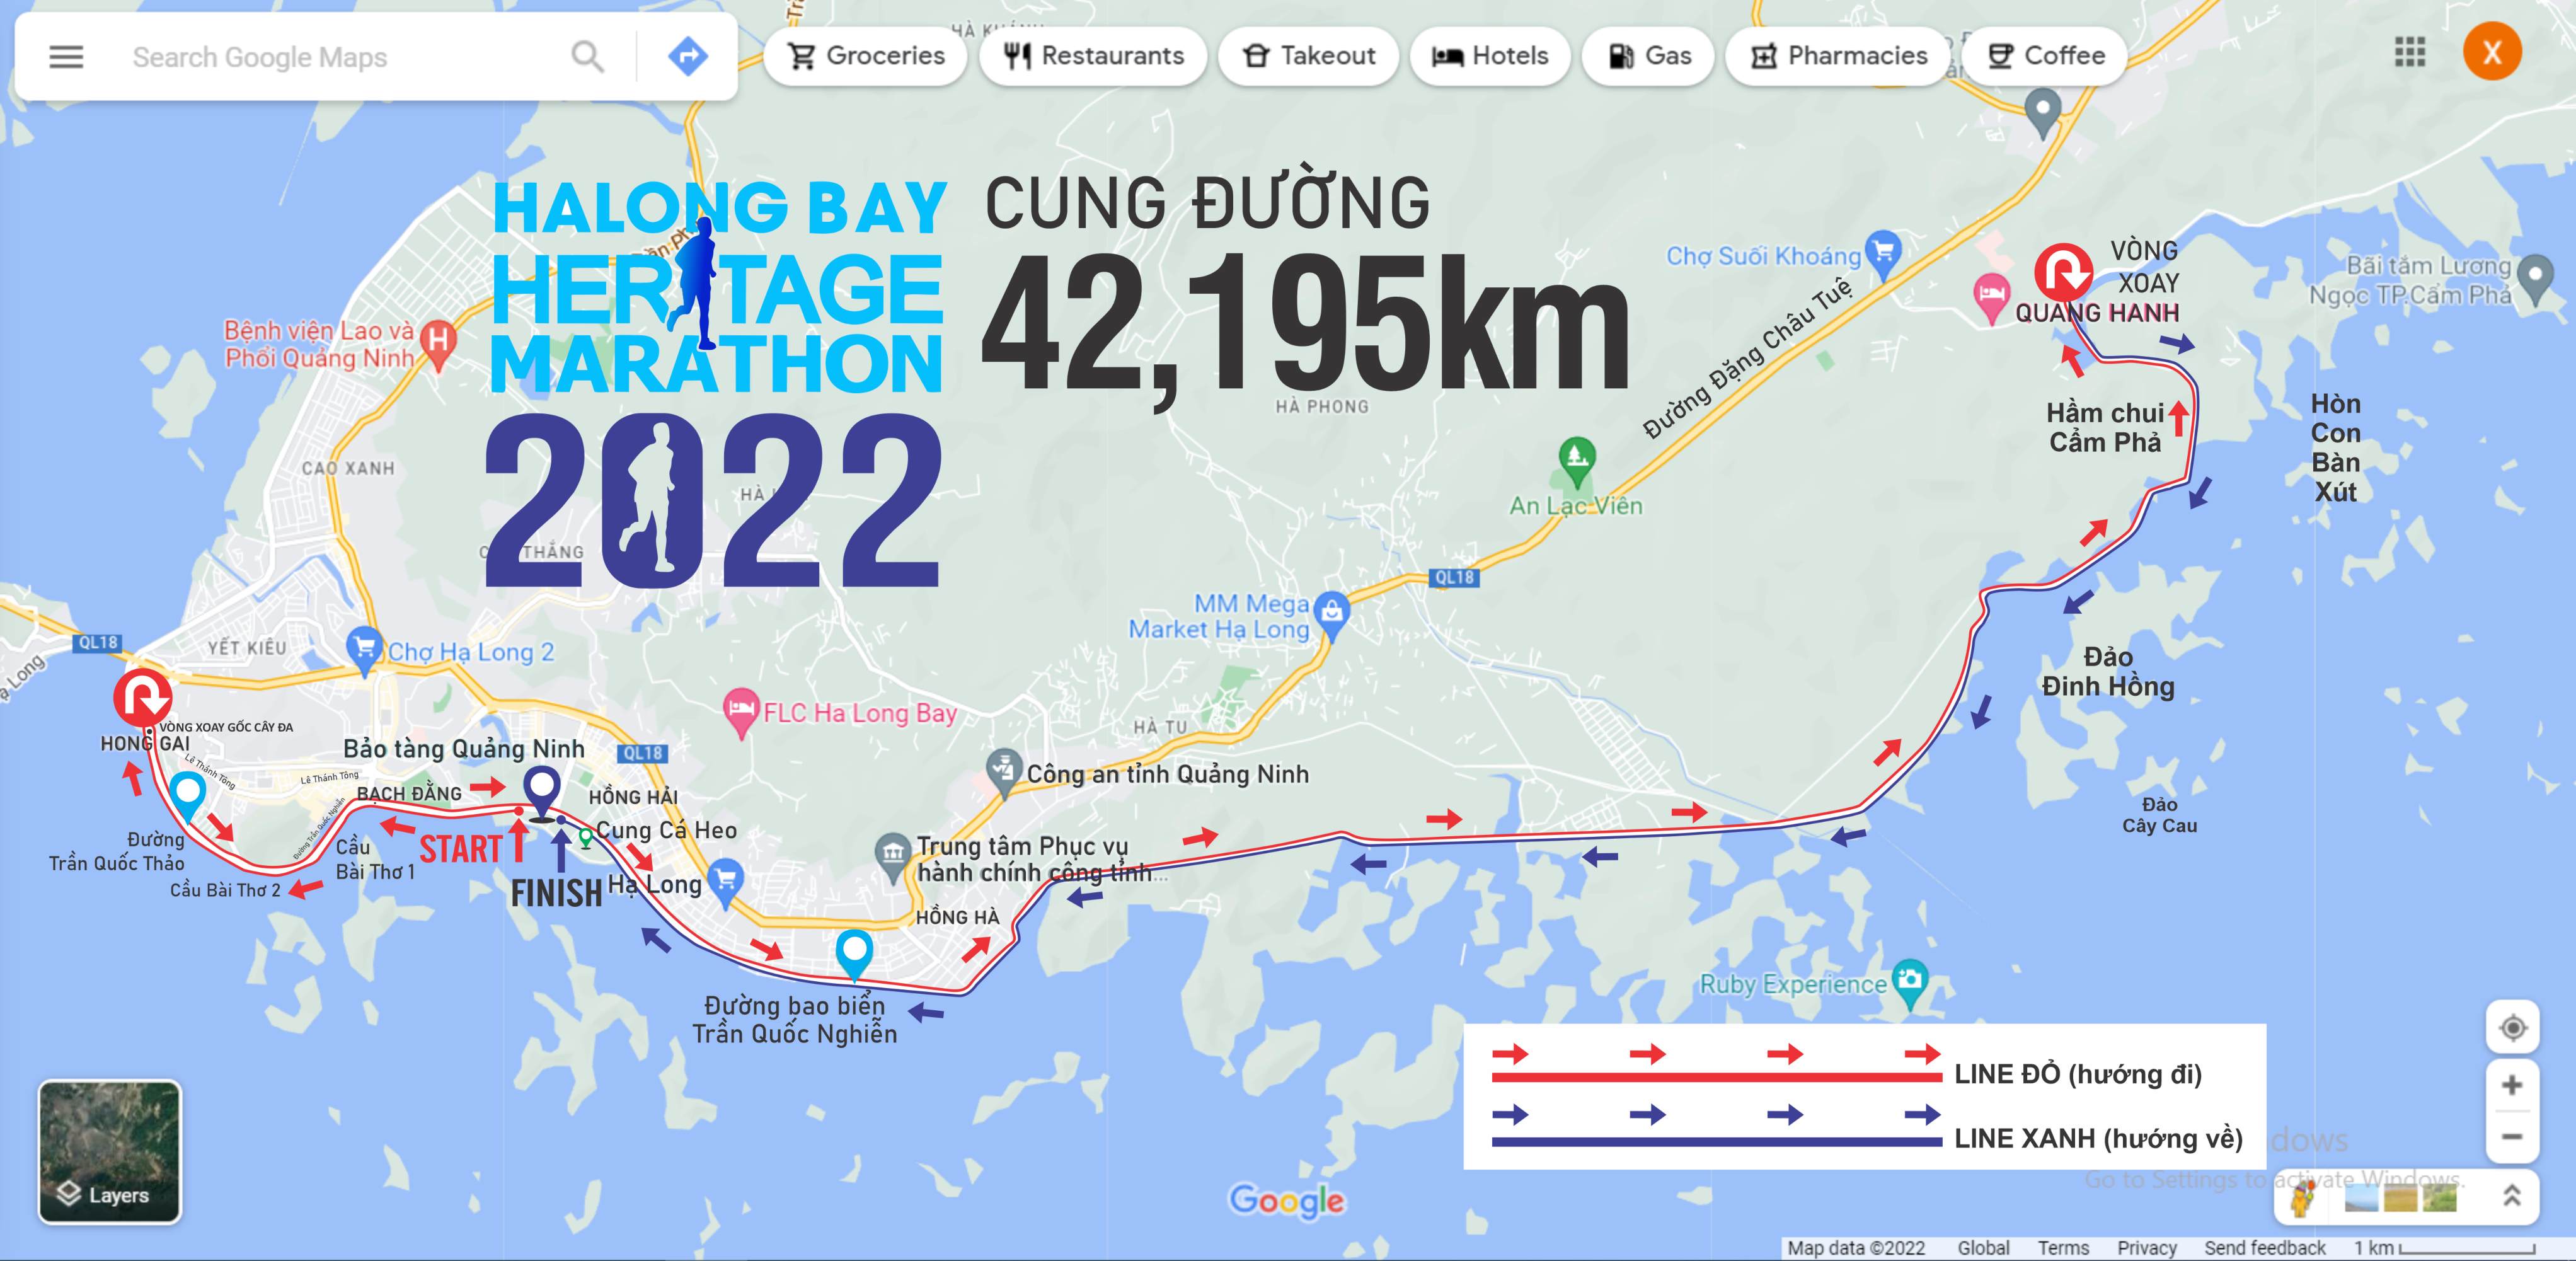 Halong Bay Heritage Marathon 2022: Cung Đường Mới Độc Đáo